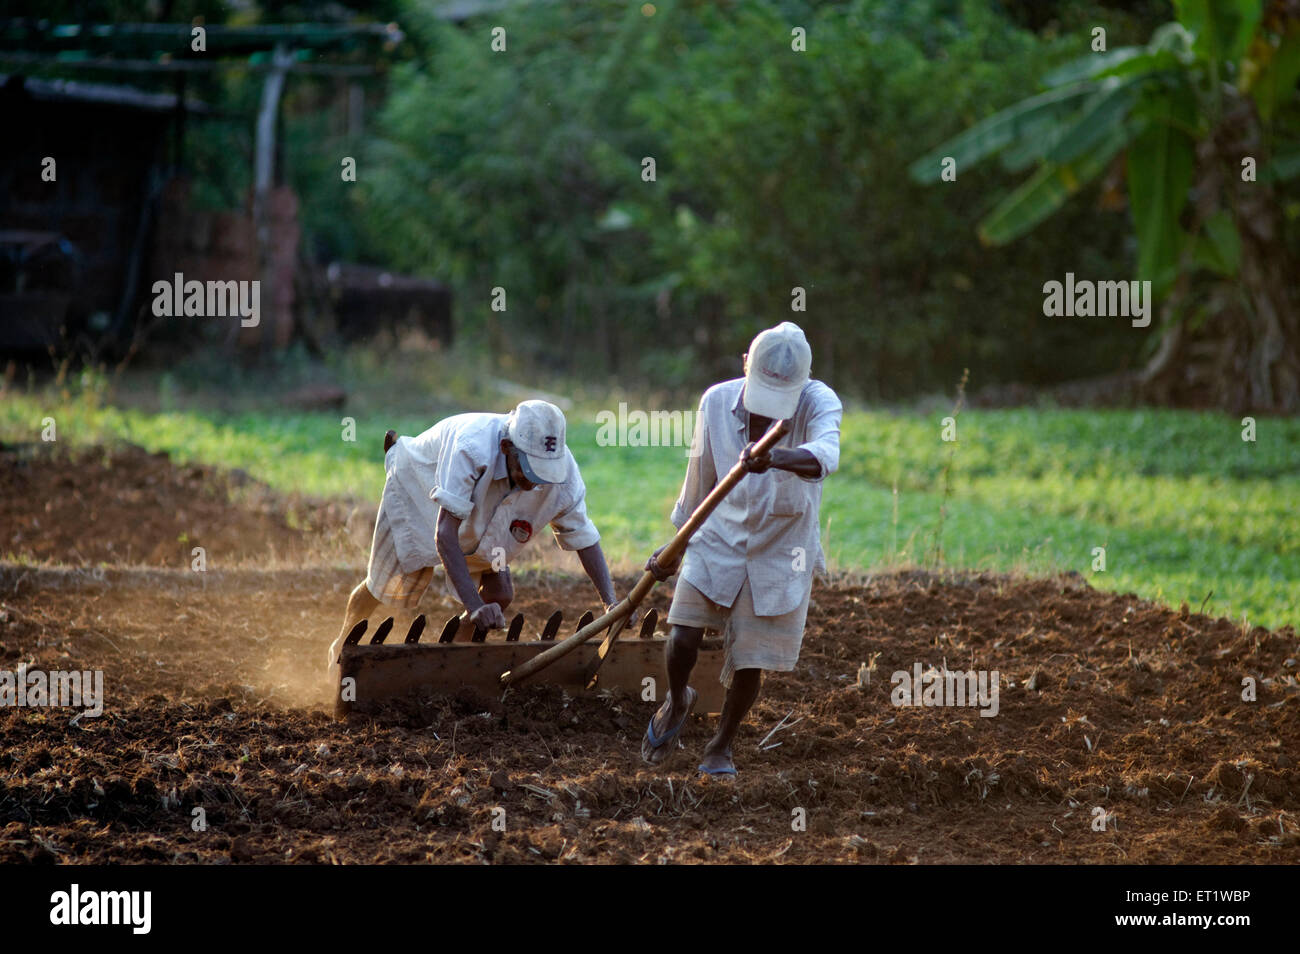 Landarbeiter im Feld Konkan Maharashtra Indien Asien HERR#556 Stockfoto